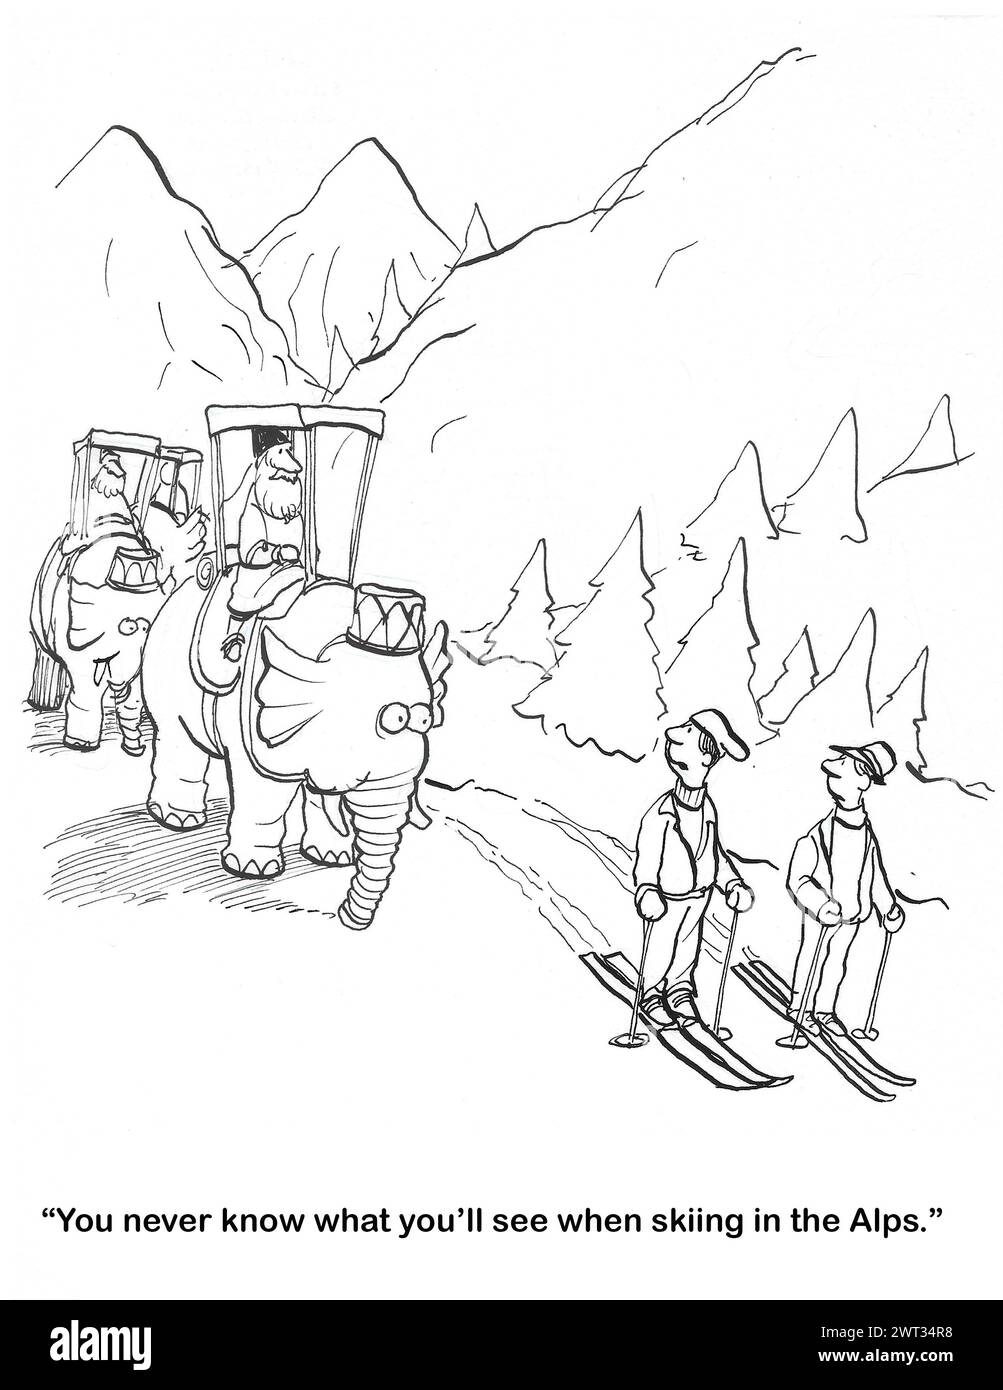 BW-Cartoon von Männern, die in den Alpen Ski fahren, während Hannibals Elefanten durchqueren. Stockfoto